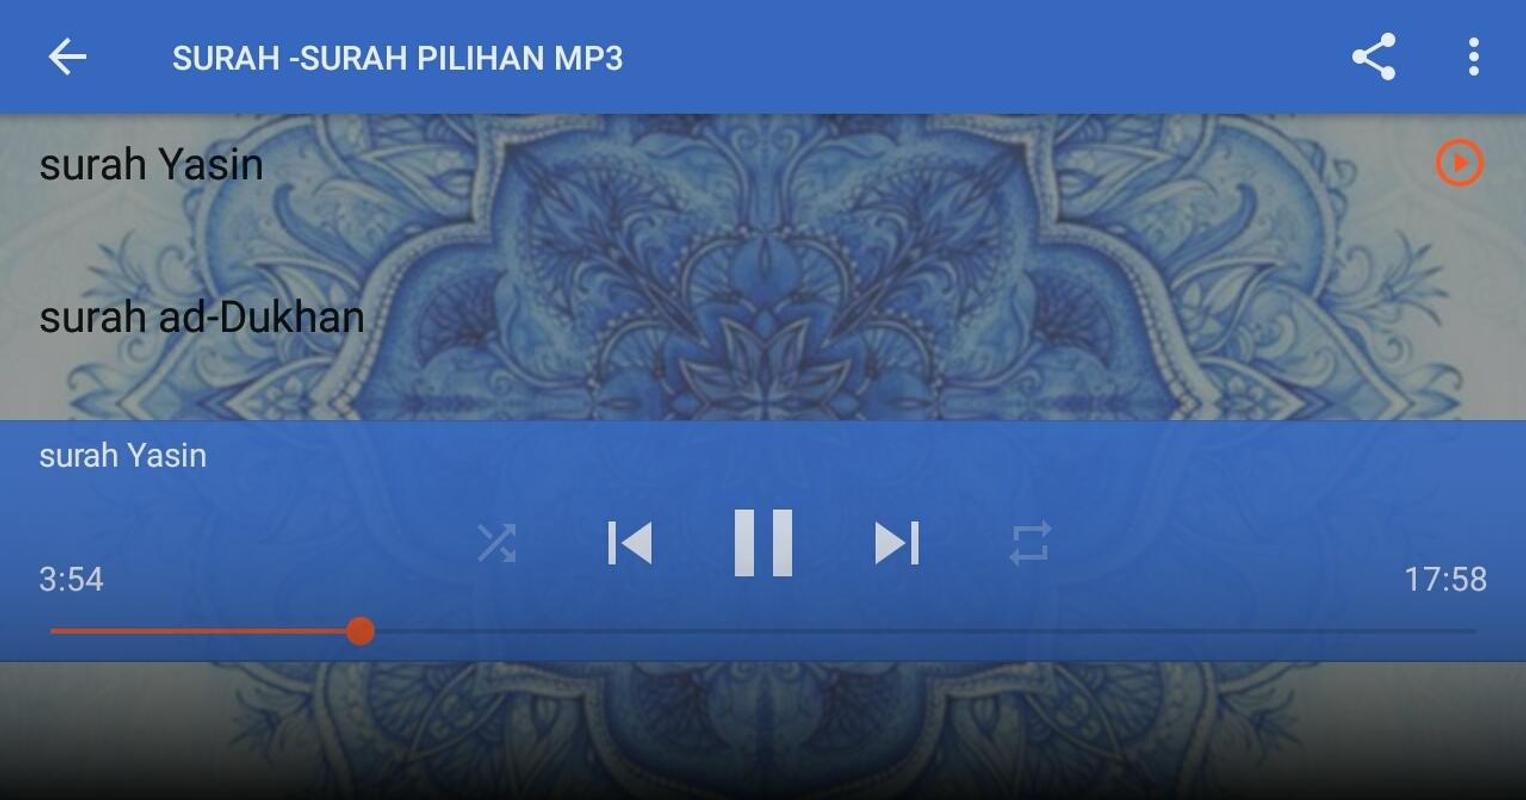 SURAH-SURAH PILIHAN MP3 APK Download - Free Music & Audio 